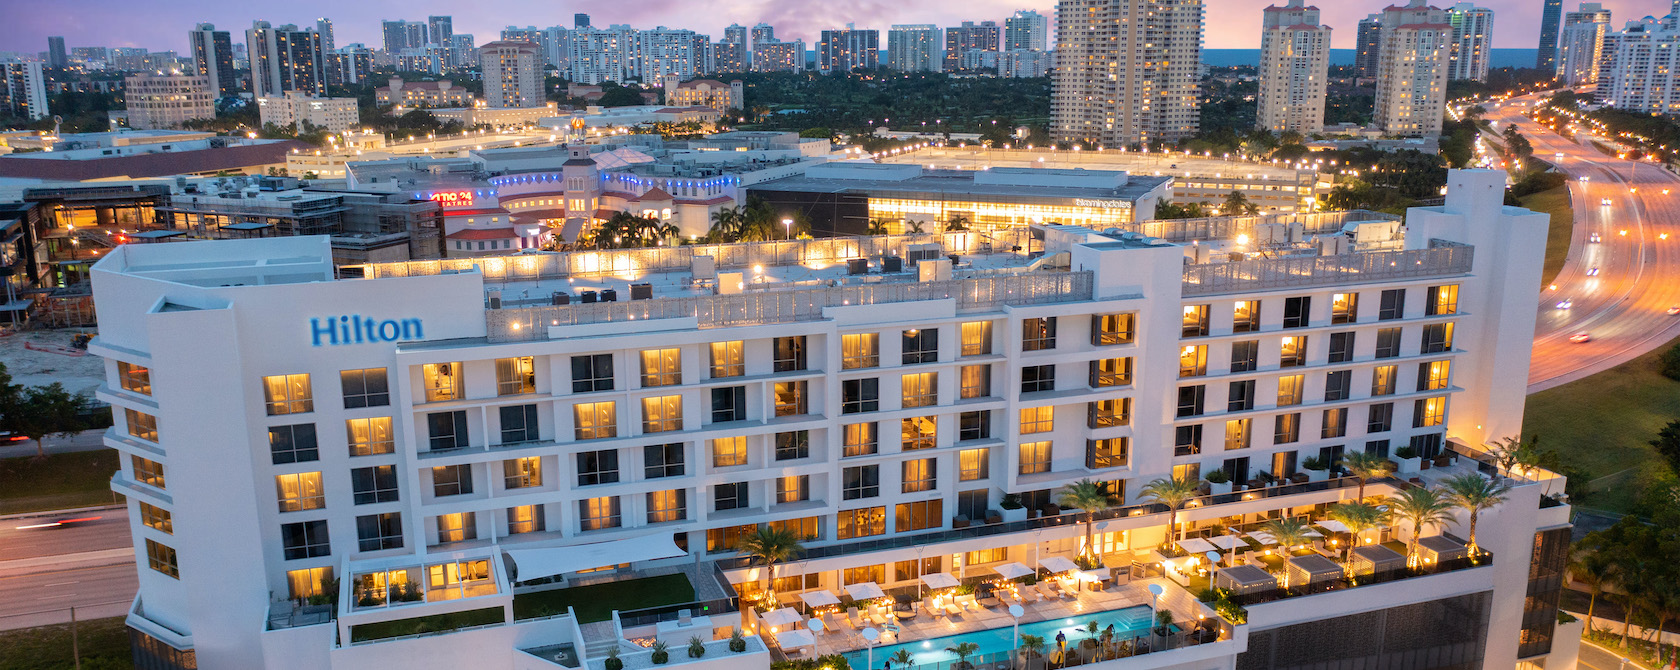 Aerial view of Hilton Aventura Miami